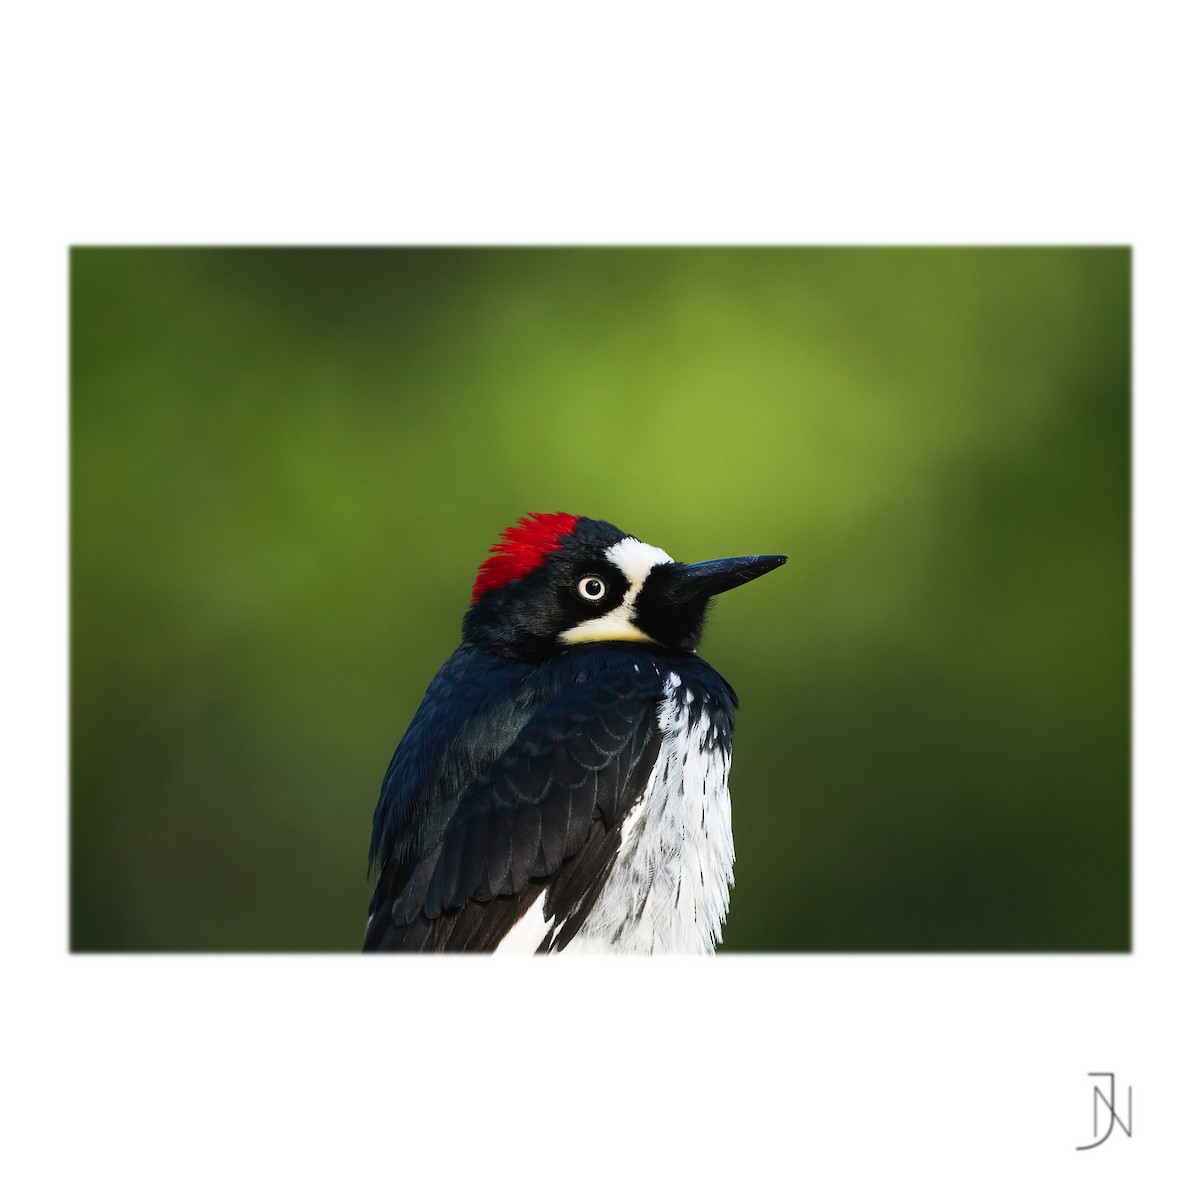 Acorn Woodpecker - Jeremy Neipp